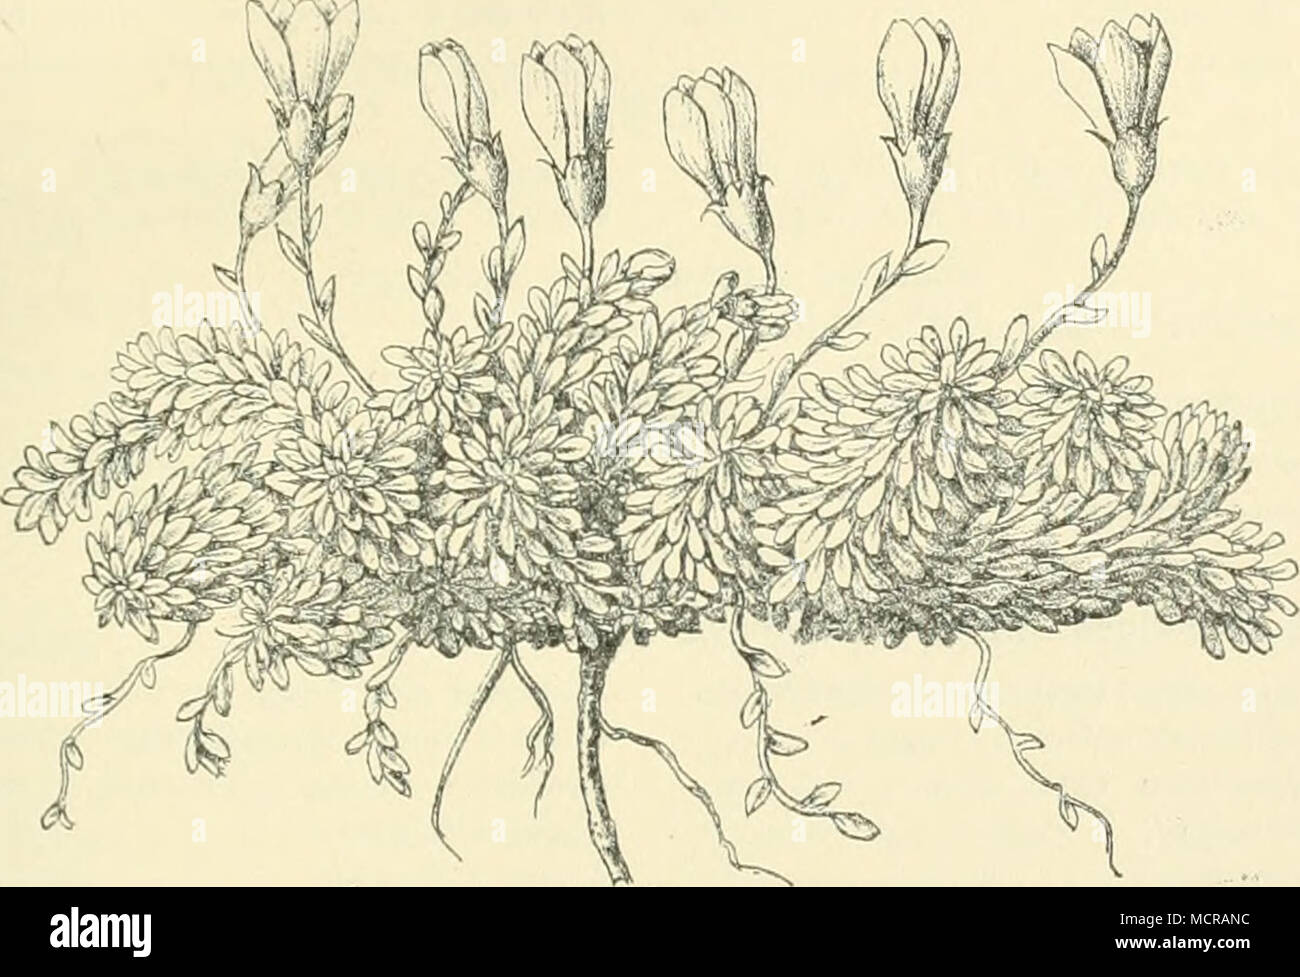 . Fig. 49. Gentiana arinerioides Griseb. (Die beiden weit geöffneten Blüten haben diese Form erst durch das Pressen erhalten.) Oreomyrrhis andicola (Umbellif.). Azordla vmltifida (Umbellif.). Azordla glabra. Azordla crcnata. bei 4600 m). Azordla dadorhiza. Azordla Webcrbaueri. Halenia caespitosa (Gent.; feuchtere Stellen). Gentiana prostrata. Gentiana ßavido-flanmiea. Gentiana lurido-violacea. Gentiana armerioides. Stachys repens Mart. &amp; Gal. (Lab.). Castilleja ftssifolia (Scroph.). Bartsia frigida. Plantage lamprophylla. Valeriana alypifolia. Valeriana connata. Stangea Emiliae (Valerian.) Stock Photo